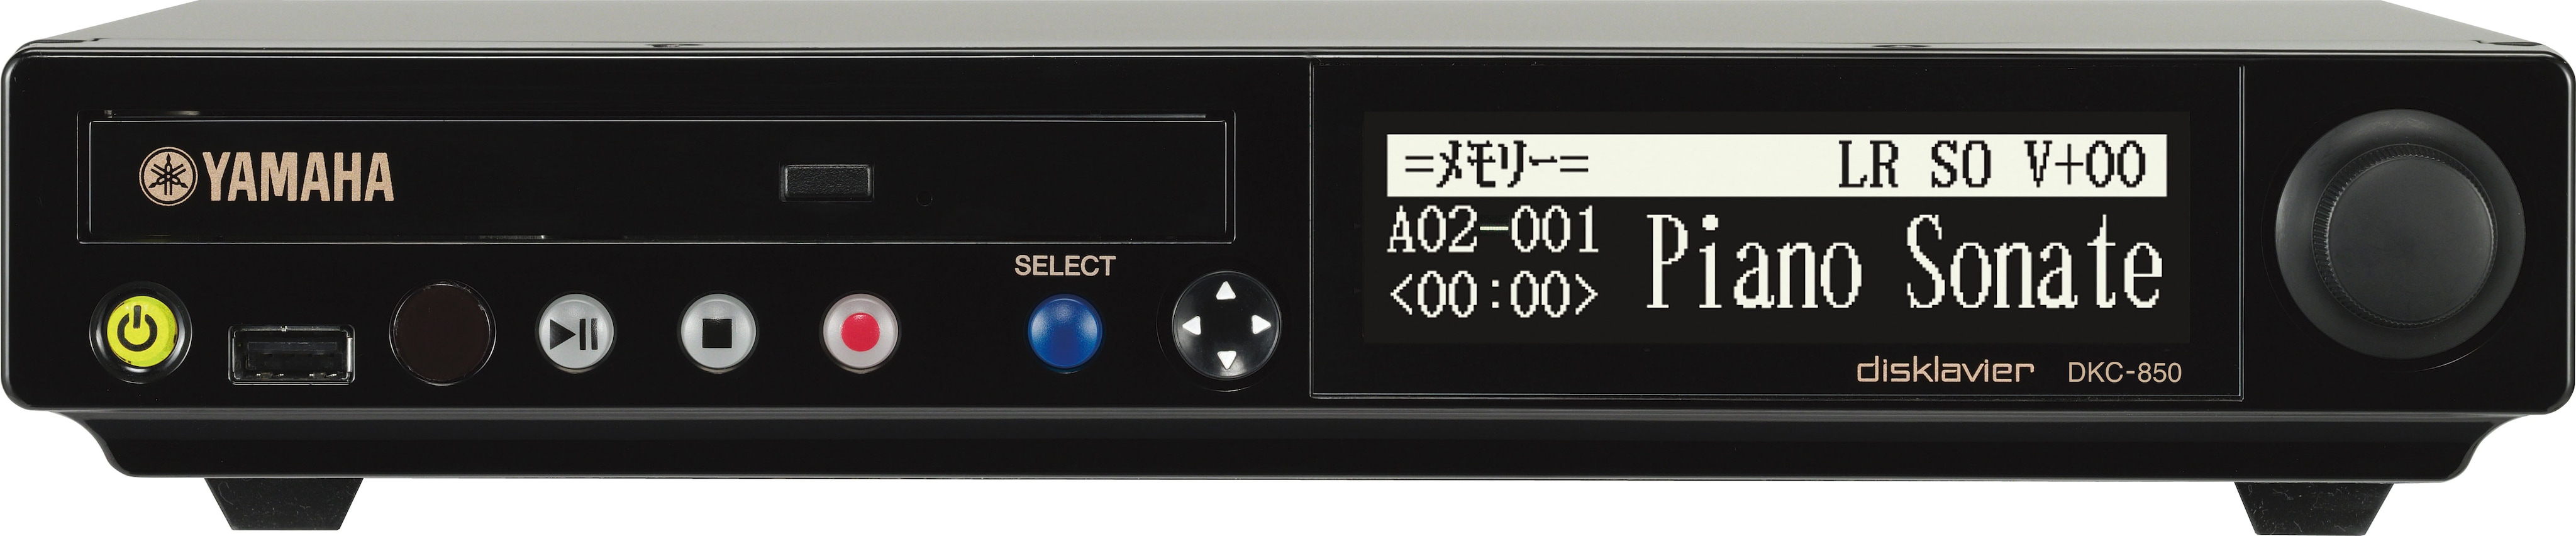 ヤマハ | DKC-850 - Disklavier™(ディスクラビア) - 概要